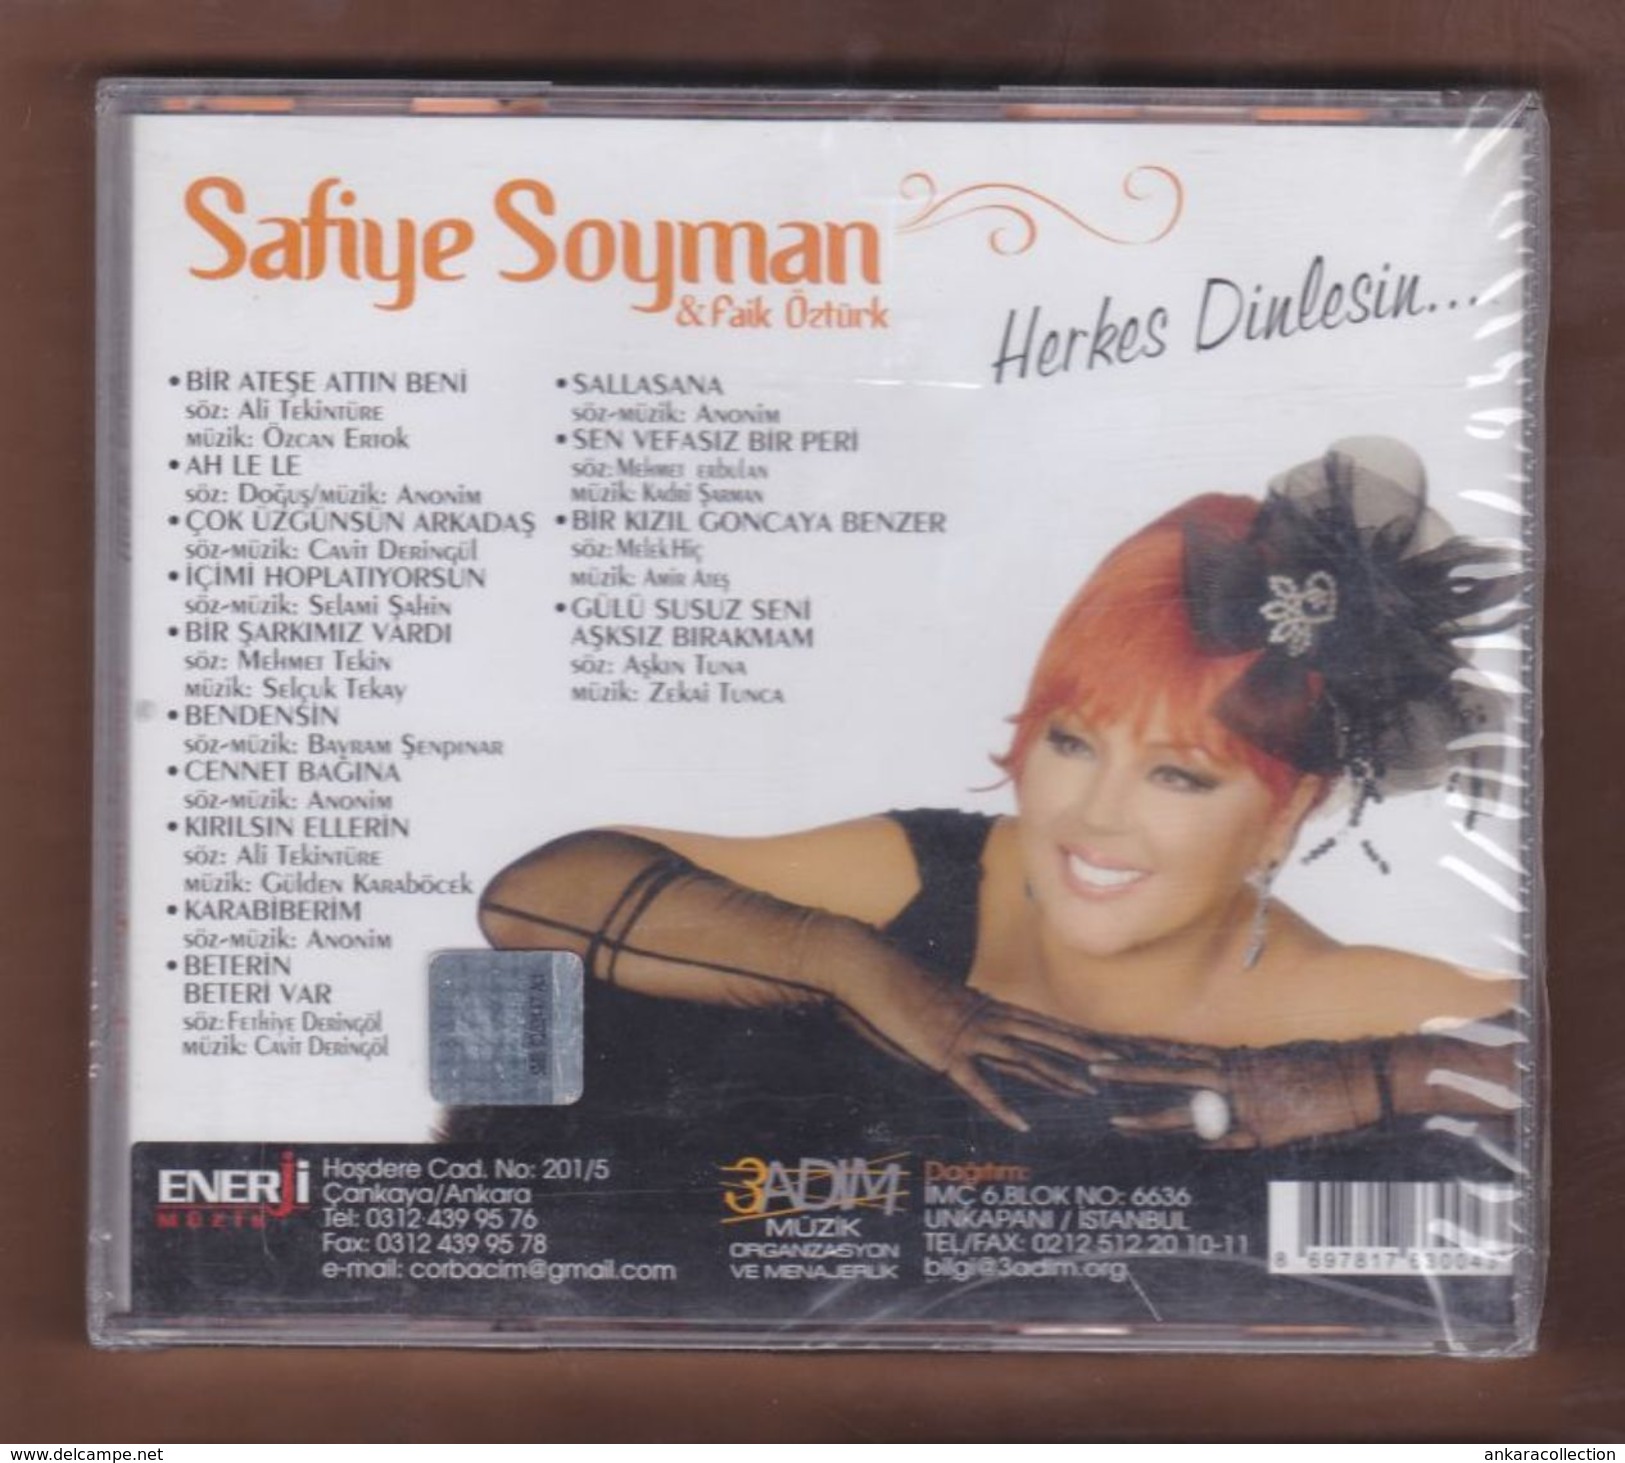 AC - Safiye Soyman - Faik öztürk Herkes Dinlesin BRAND NEW TURKISH MUSIC CD - World Music